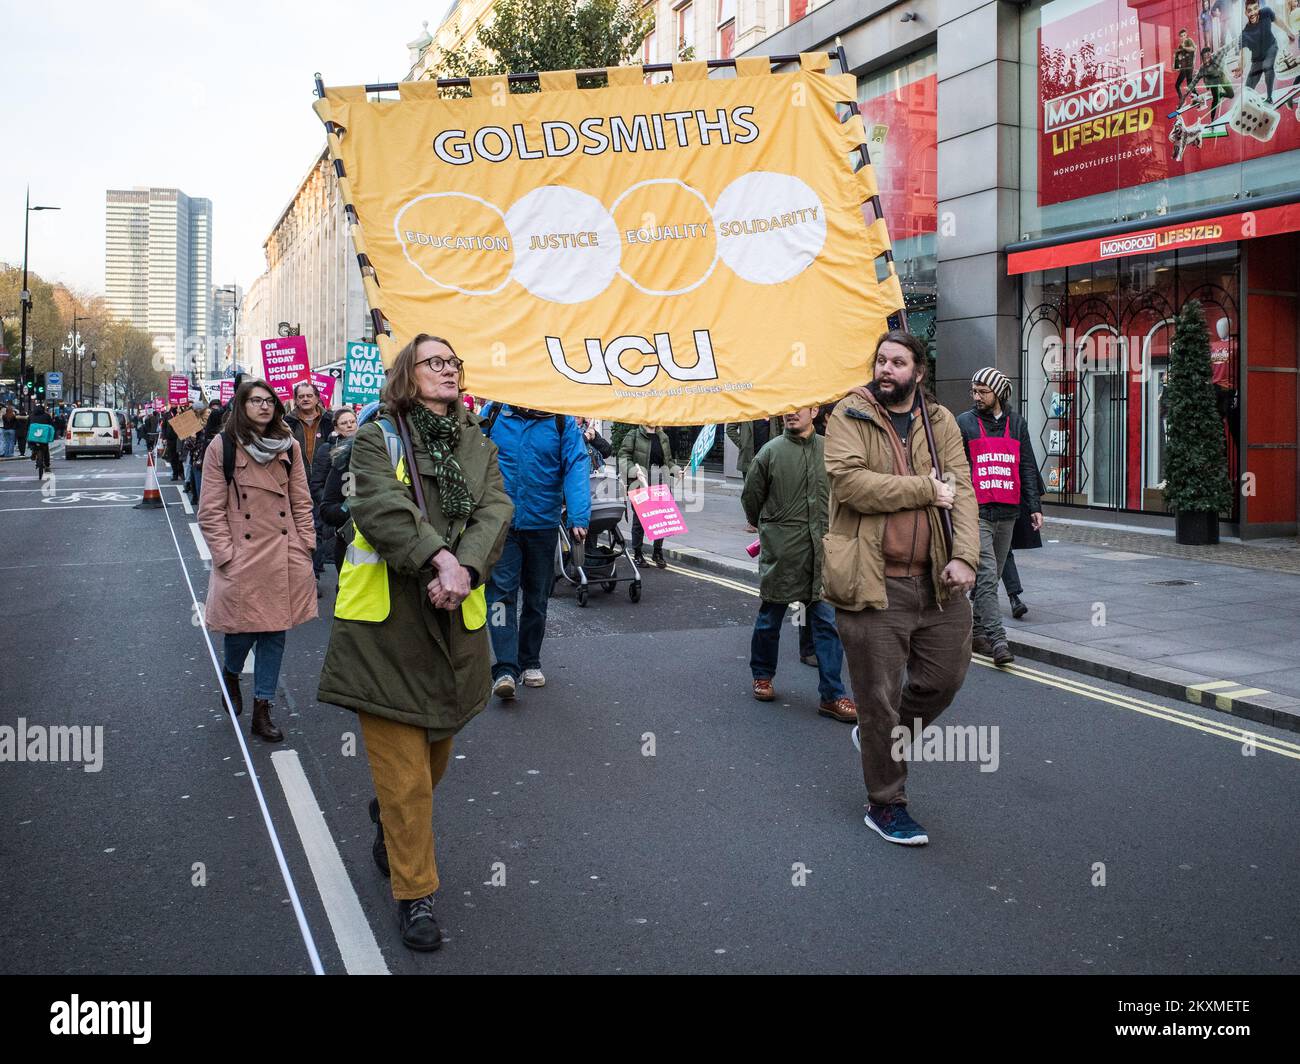 DIMOSTRAZIONE nazionale UCU 30/11/2022. Gli studenti marciano lungo Tottenham Court Road nel centro di Londra per chiedere una retribuzione più equa e diritti dei lavoratori per il personale. Foto Stock